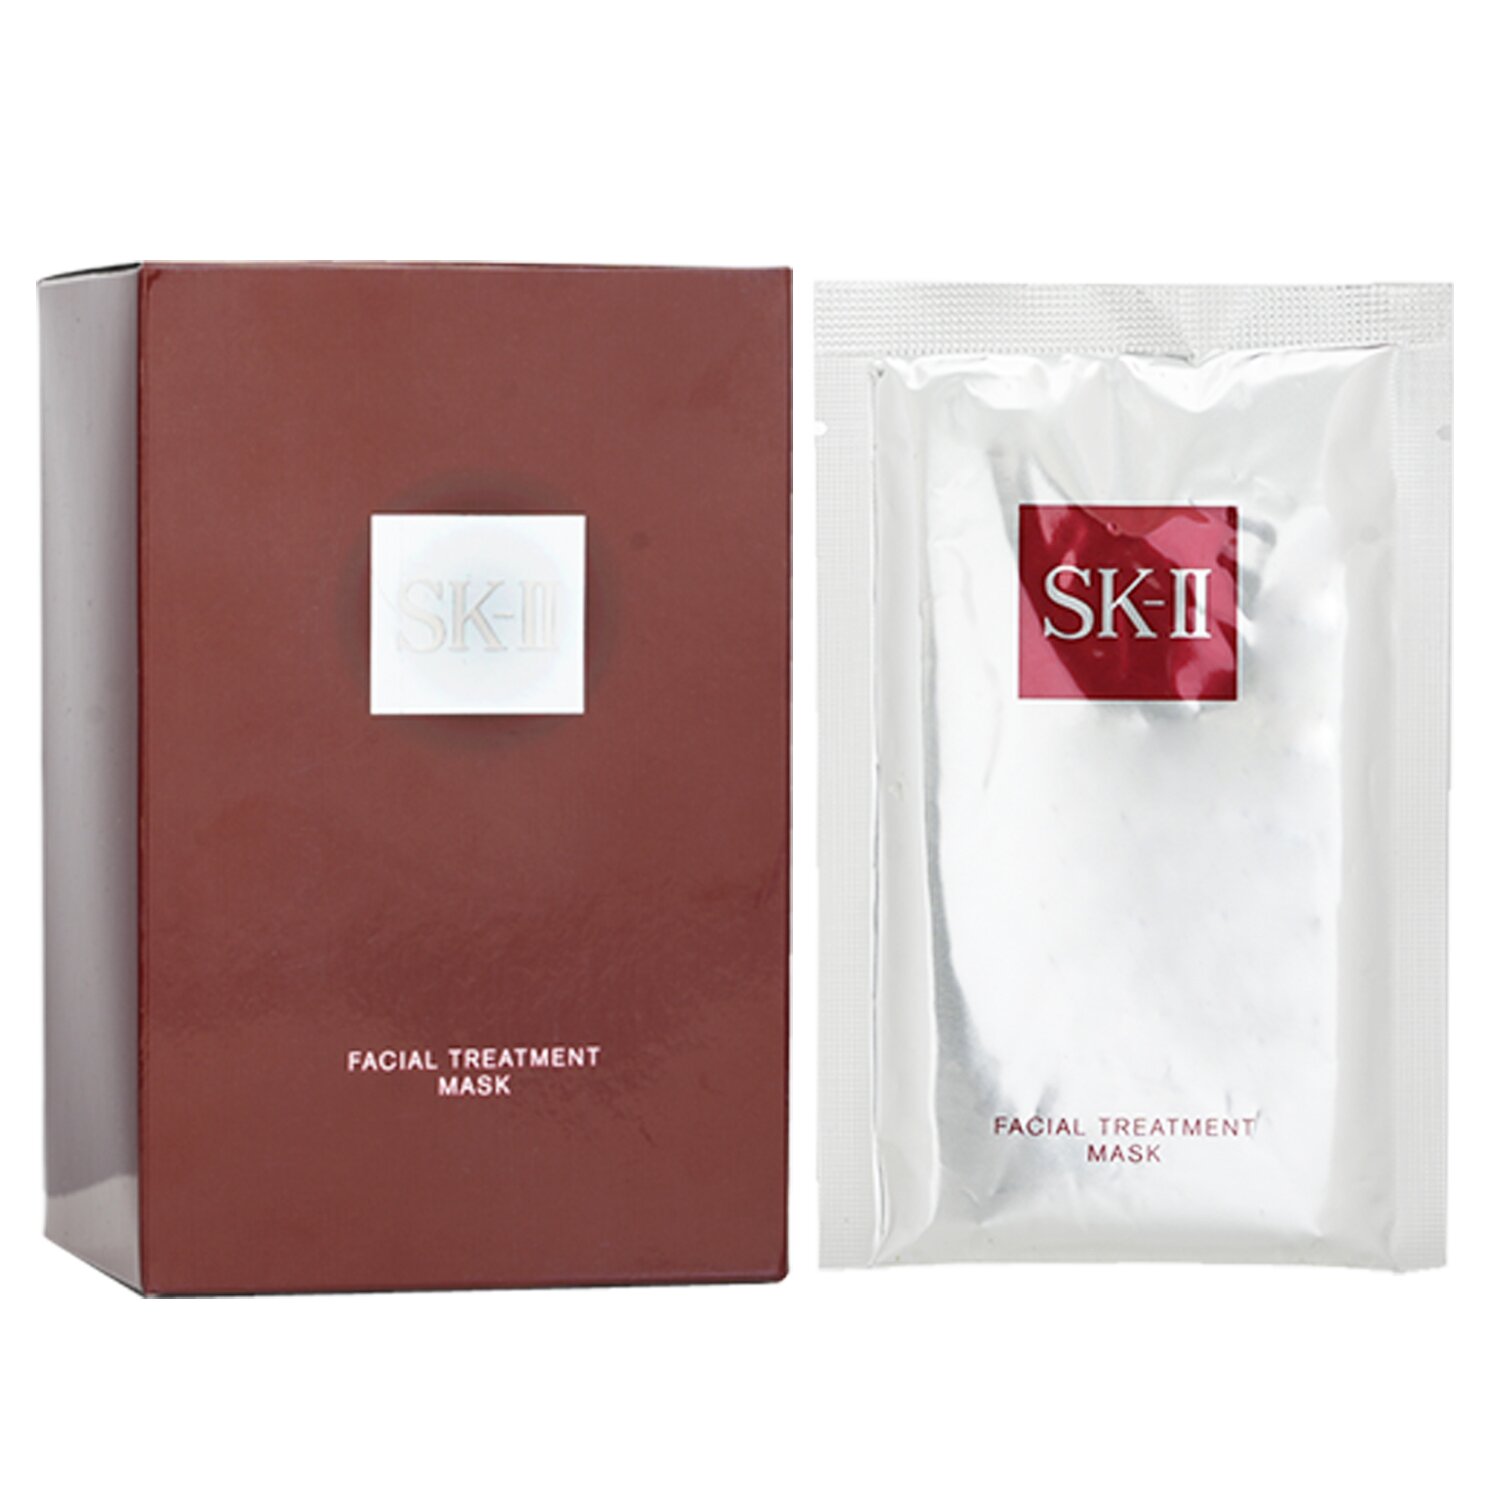 SK II 美之匙  護膚面膜 (期間限定單盒裝) 10sheets